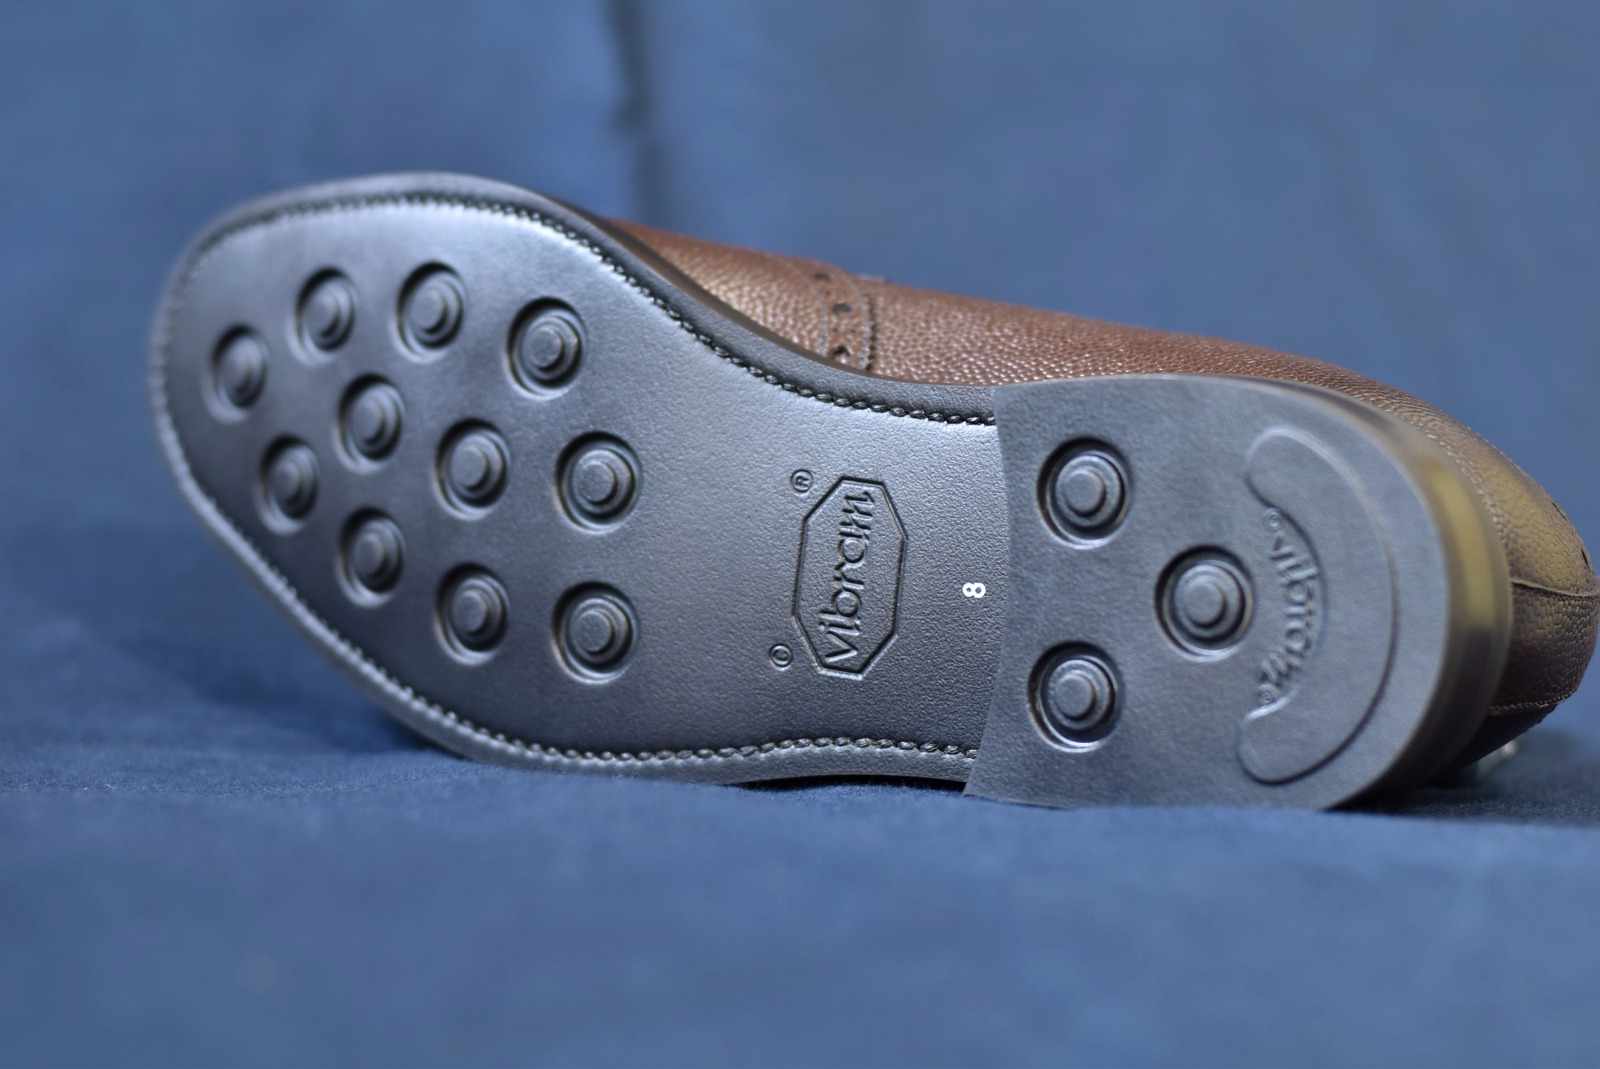 ビジネスシューズ革靴RAYMARシボ革フルブローグダークブラウンオールウェザーシリーズグットイヤーウェルト23.5cm~28.0cmレイマー全天候型モデル外羽根ラバーソールVibramDayles